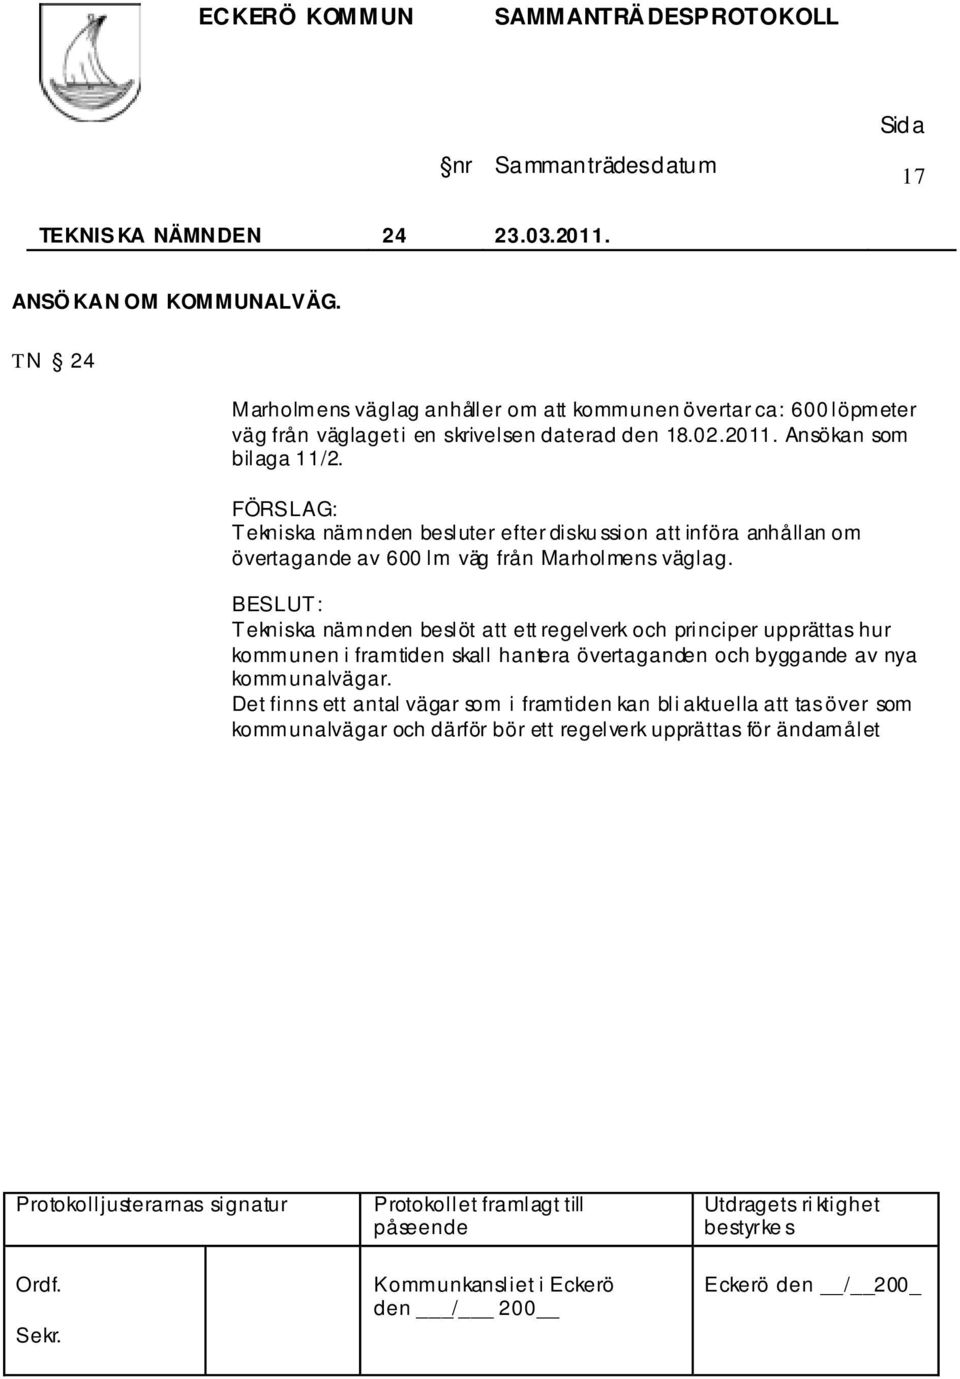 Ansökan som bilaga 11/2. Tekniska nämnden besluter efter disku ssion att införa anhållan om övertagande av 600 lm väg från Marholmens väglag.